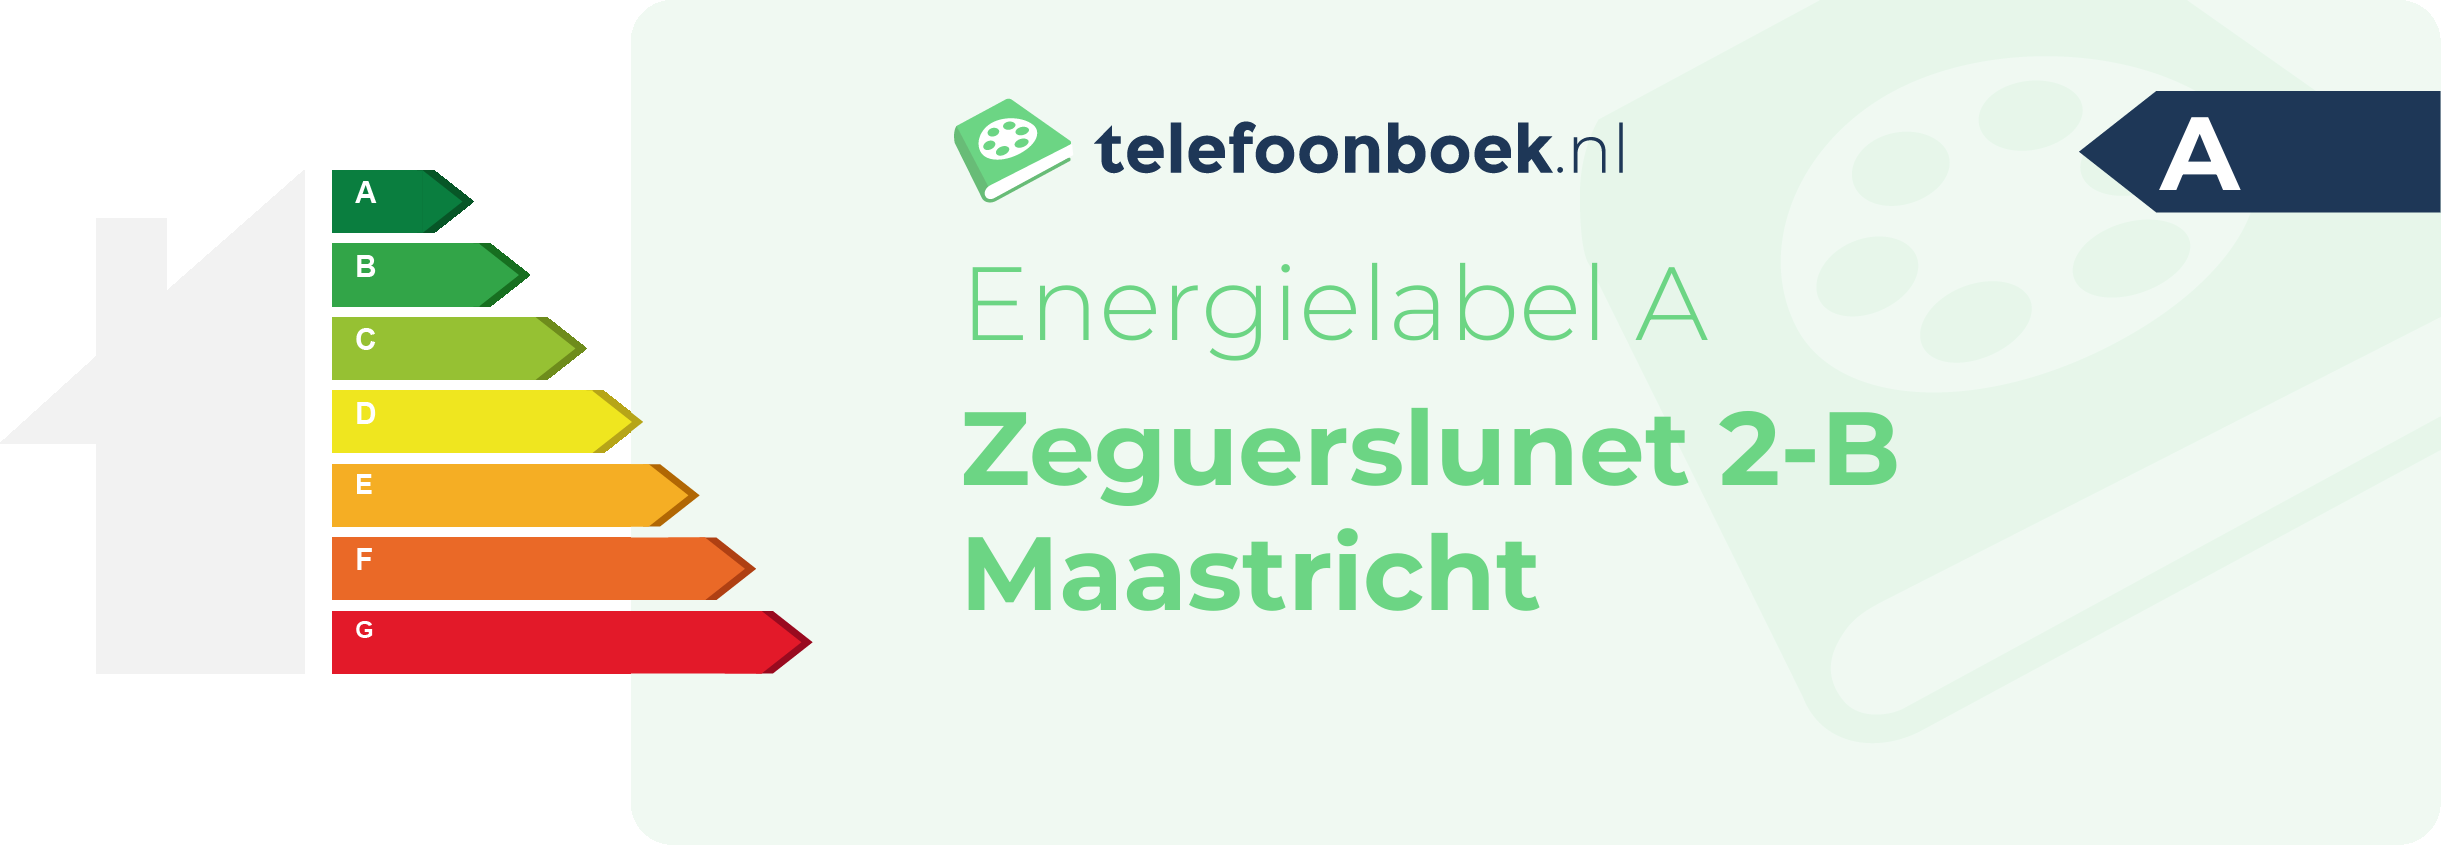 Energielabel Zeguerslunet 2-B Maastricht